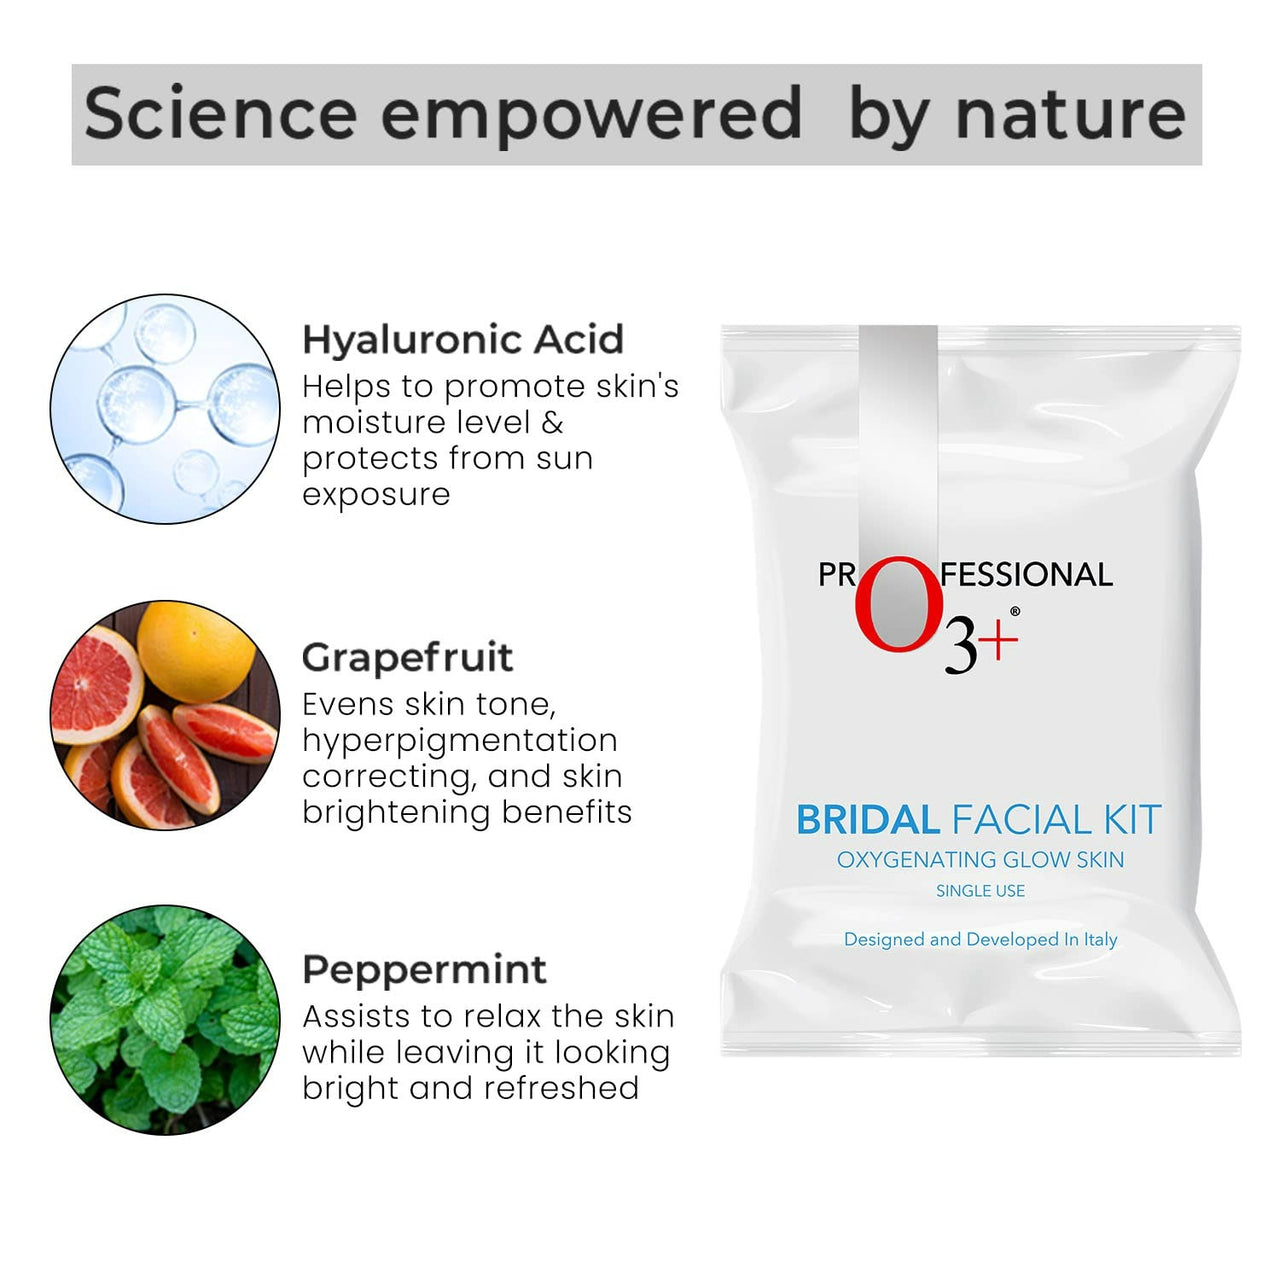 Professional O3+ Bridal Facial Kit Oxygenating Glow Skin - Distacart